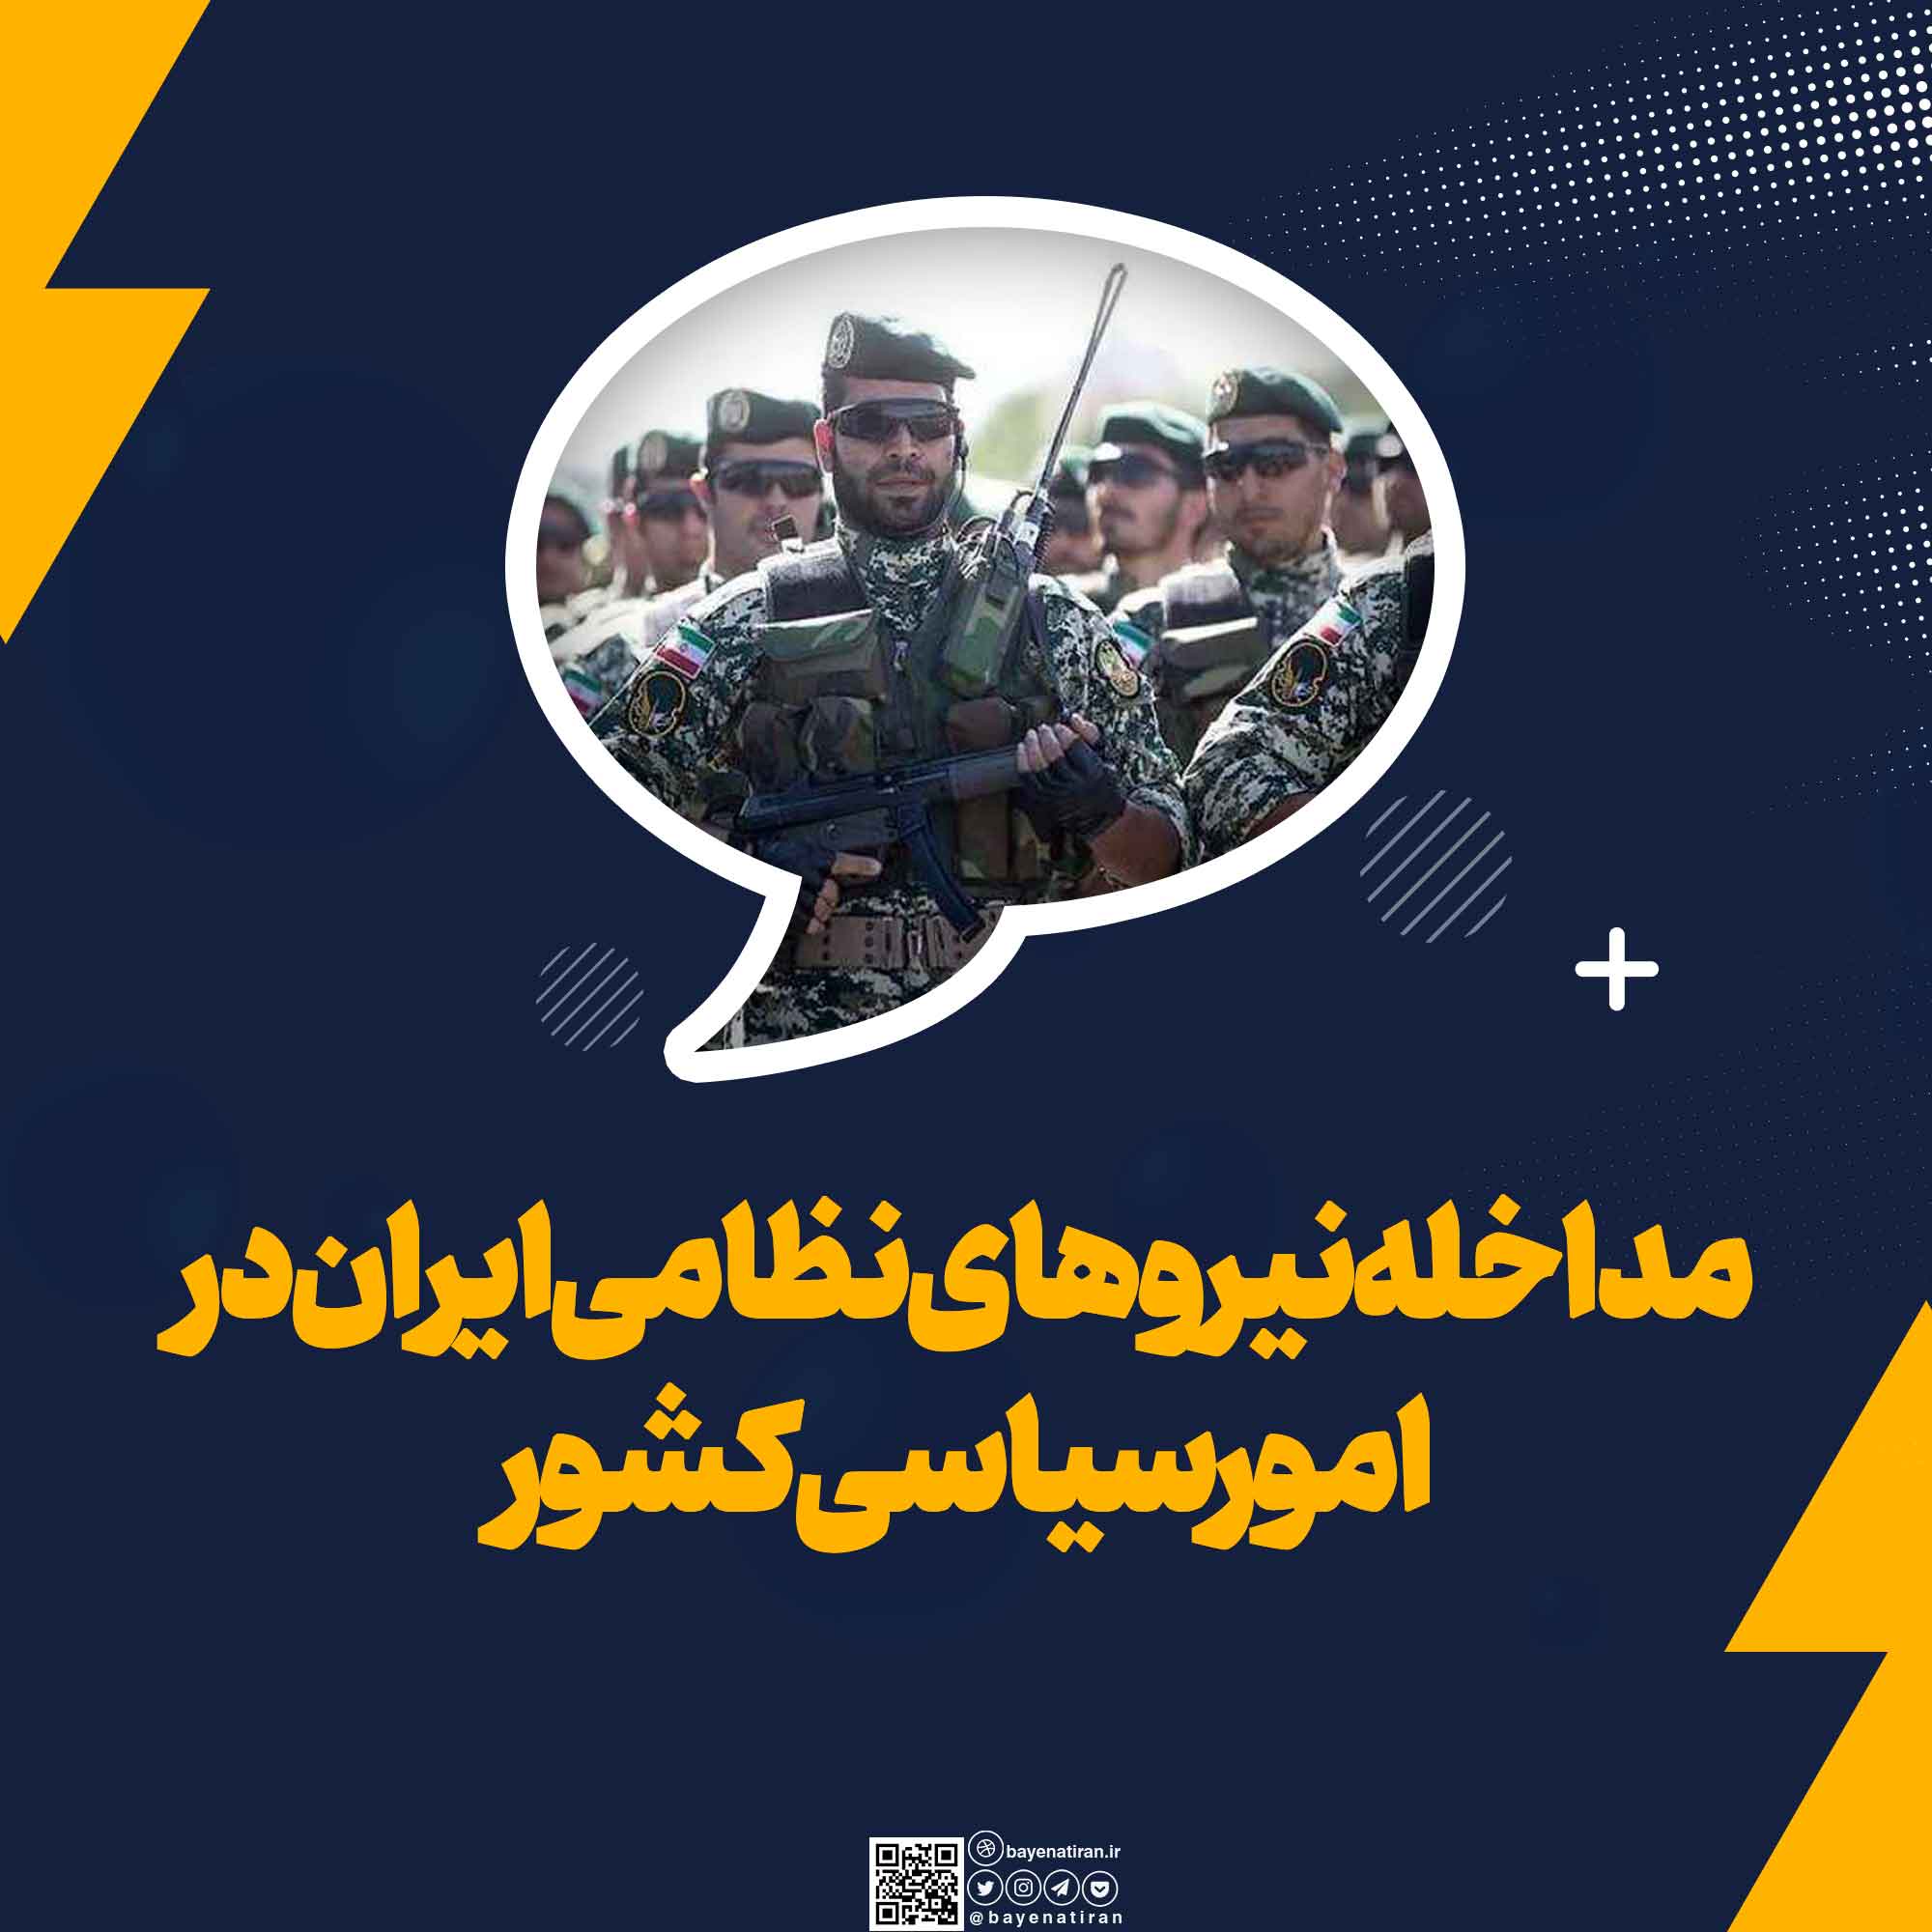 مداخله-نیروهای-نظامی-ایران-در-امور-سیاسی-کشور